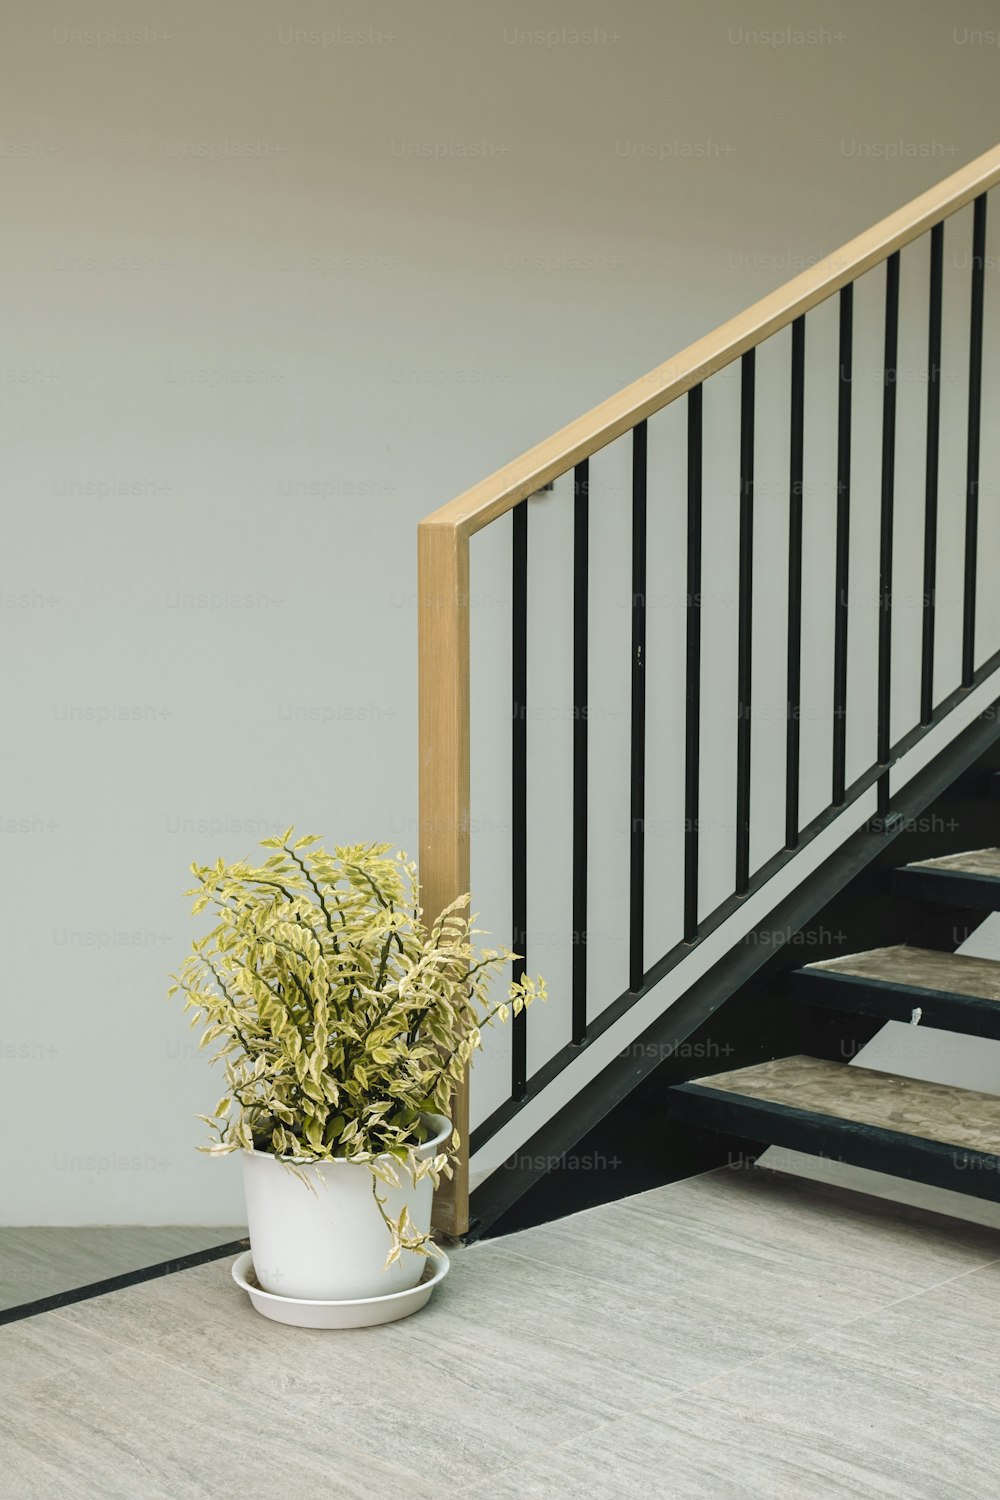 eine Topfpflanze, die auf dem Boden neben einer Treppe sitzt